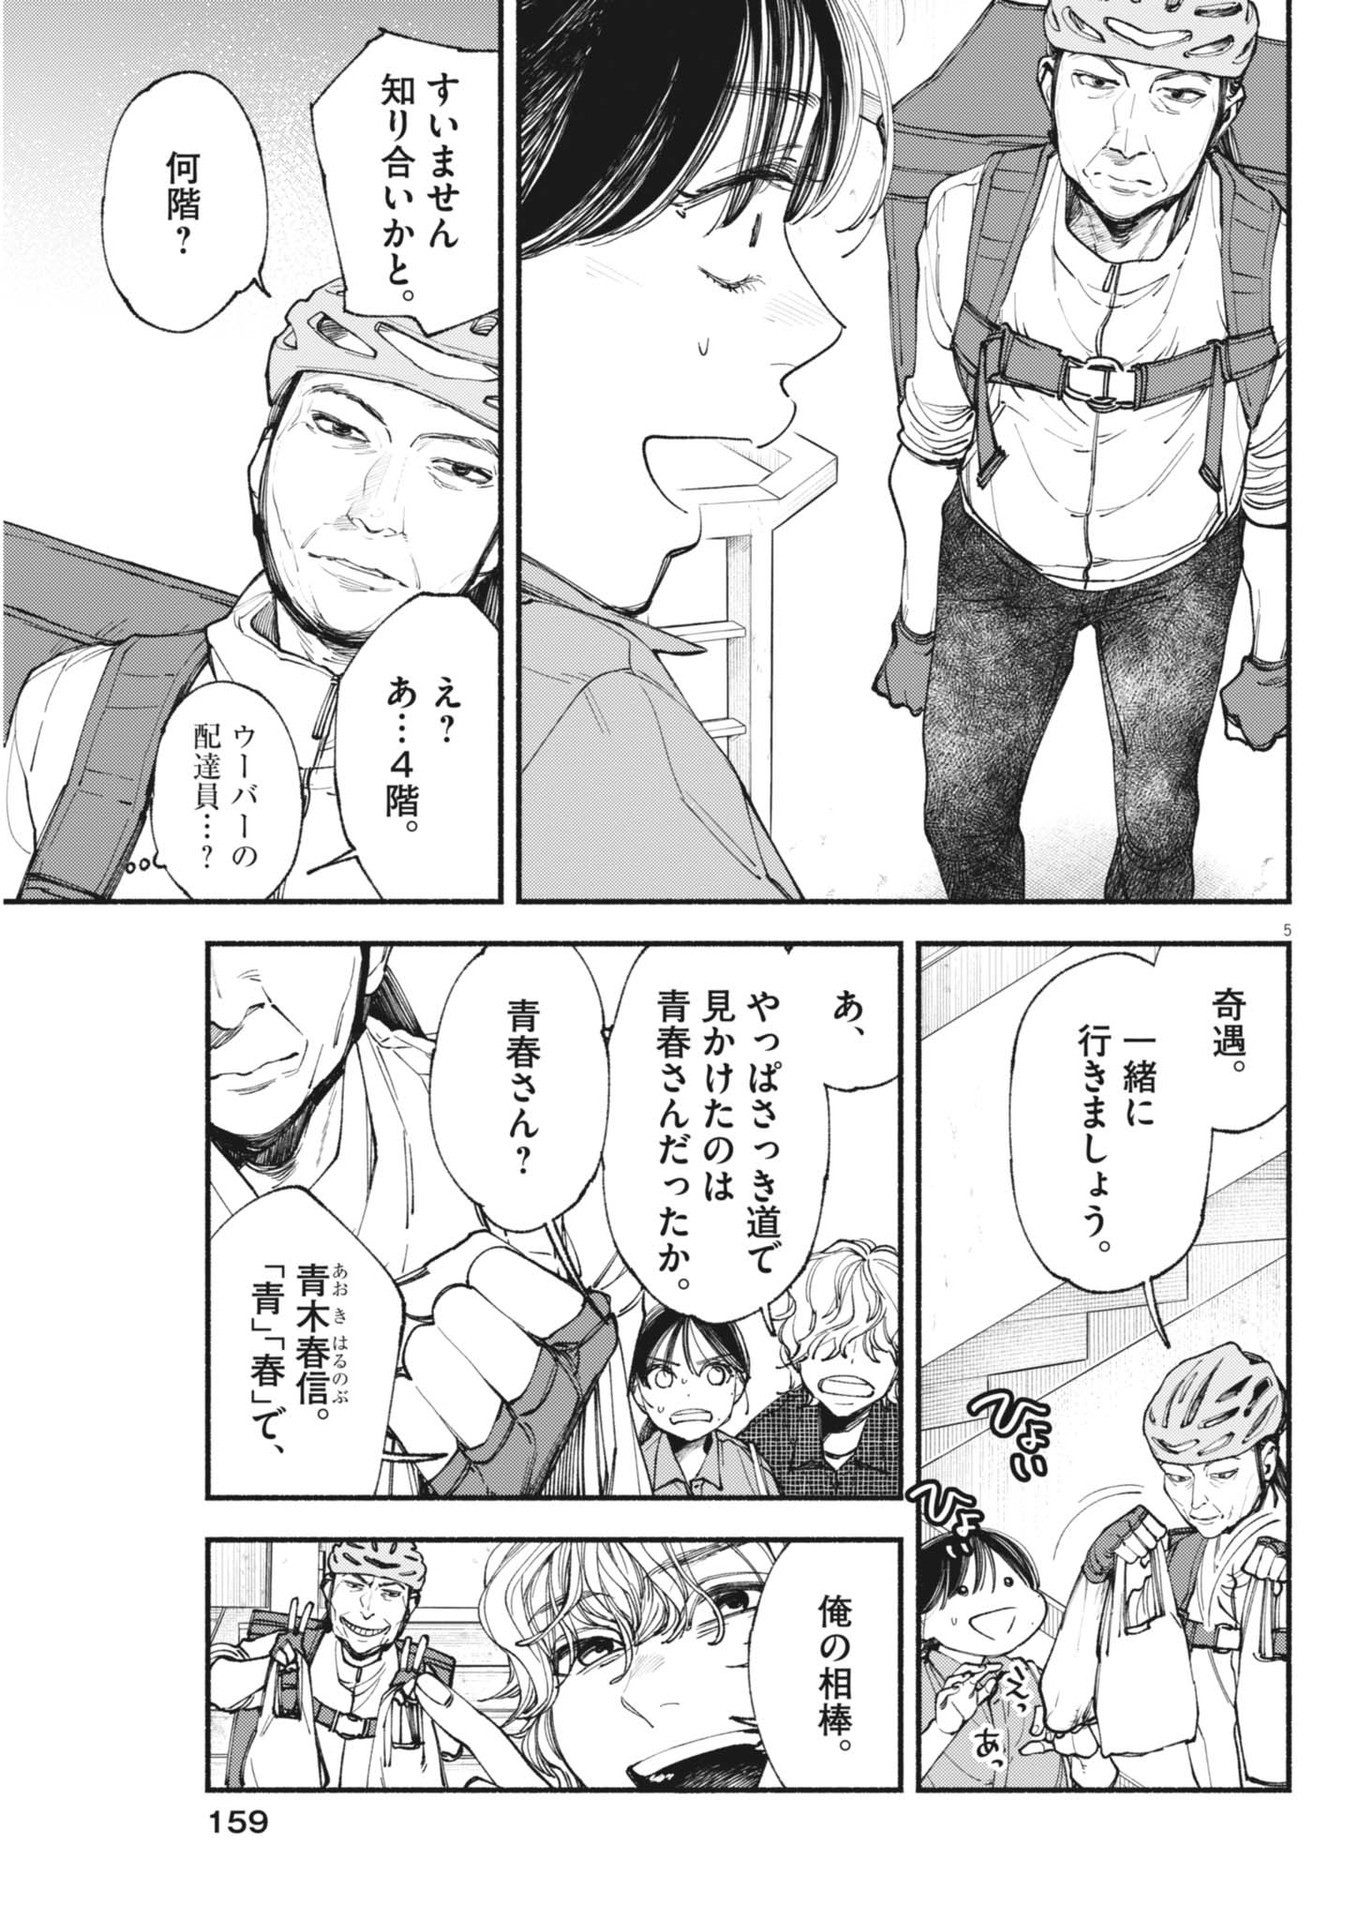 Konoyo wa Tatakau Kachi ga Aru  - Chapter 28 - Page 5